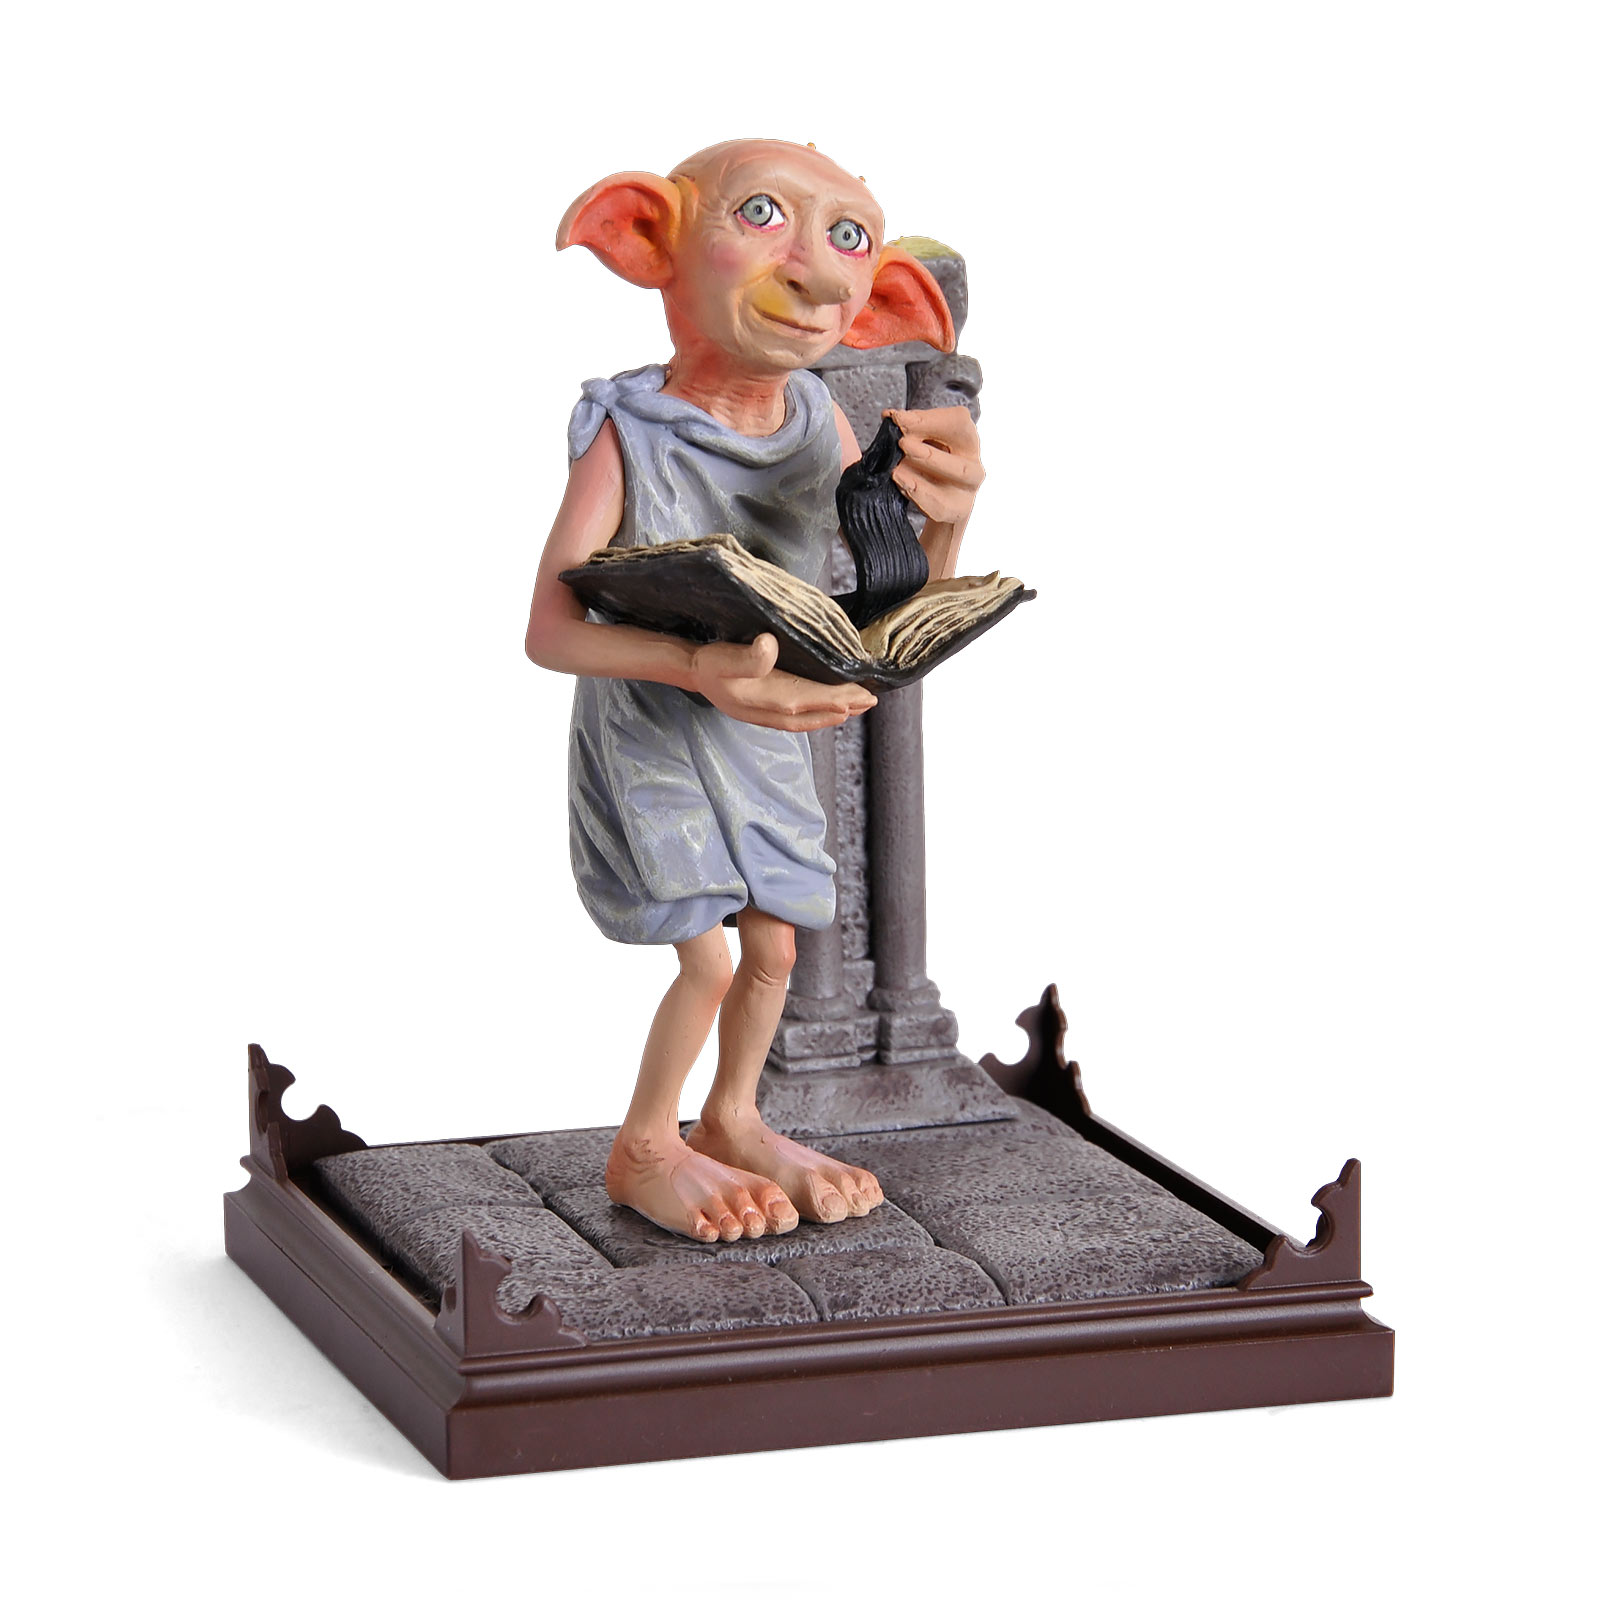 Dobby - Figurine des Animaux Fantastiques de Harry Potter